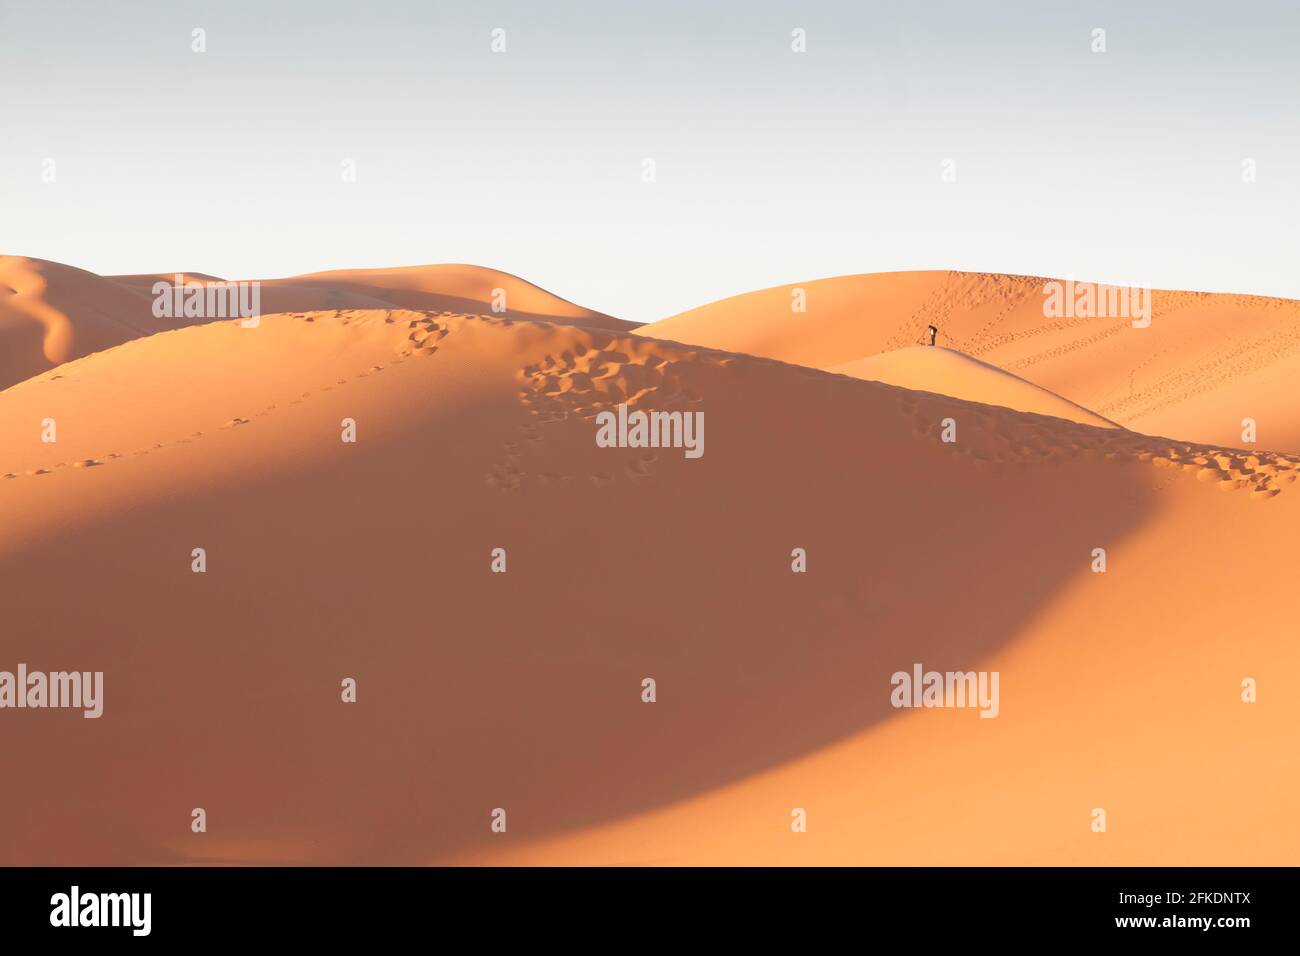 Erg Chebbi dunes at Sahara desert, Morocco, sunlit at sunrise Stock Photo